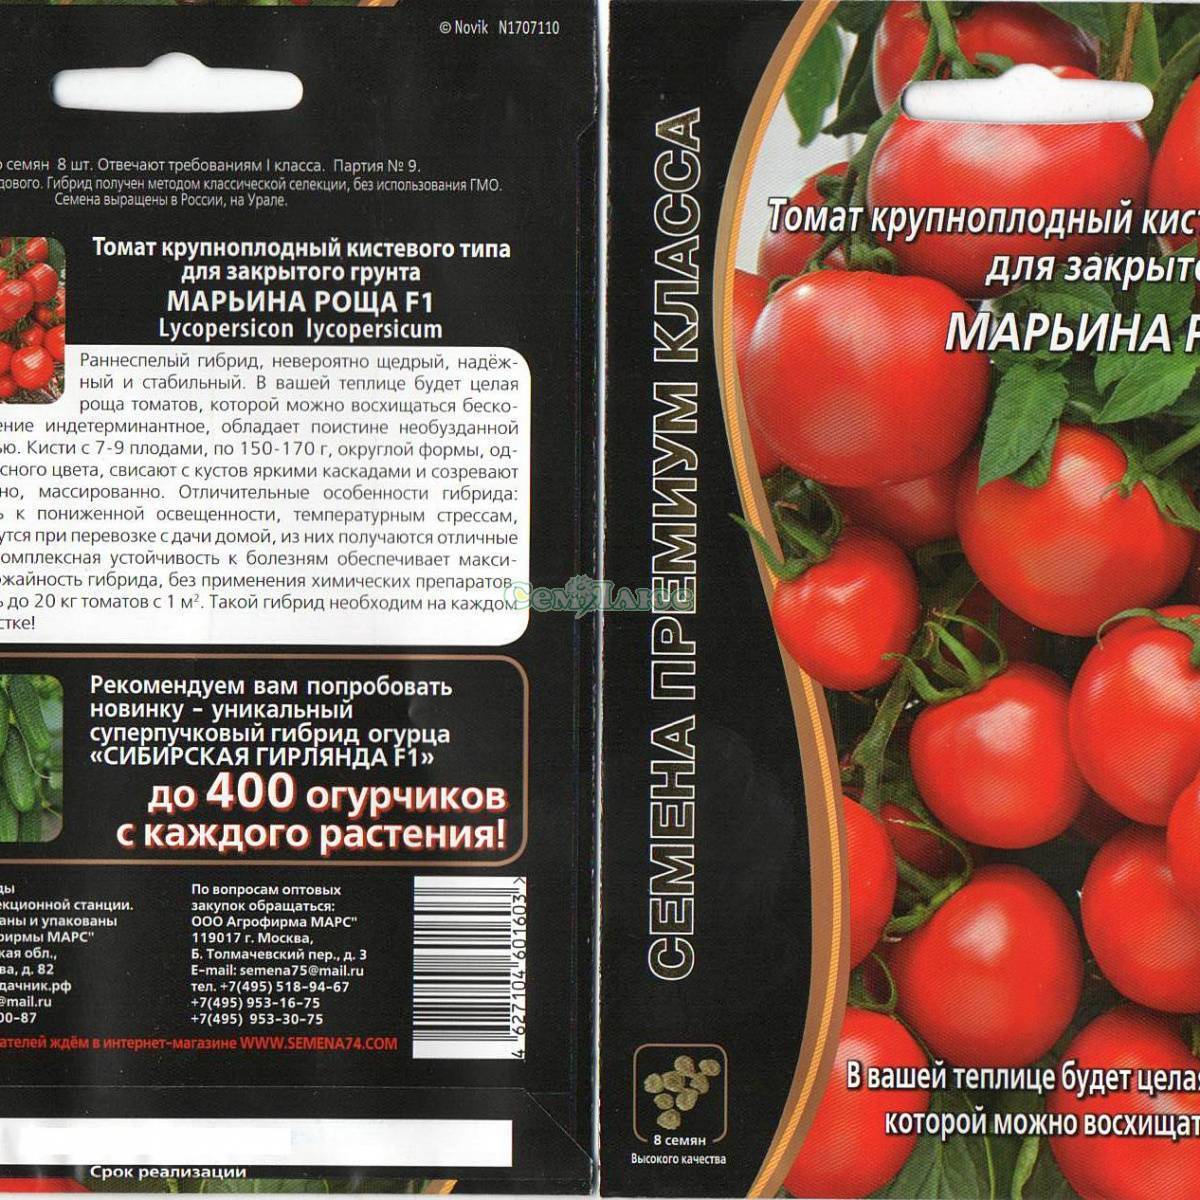 ᐉ томат марьина роща - описание сорта, выращивание, уход, видео